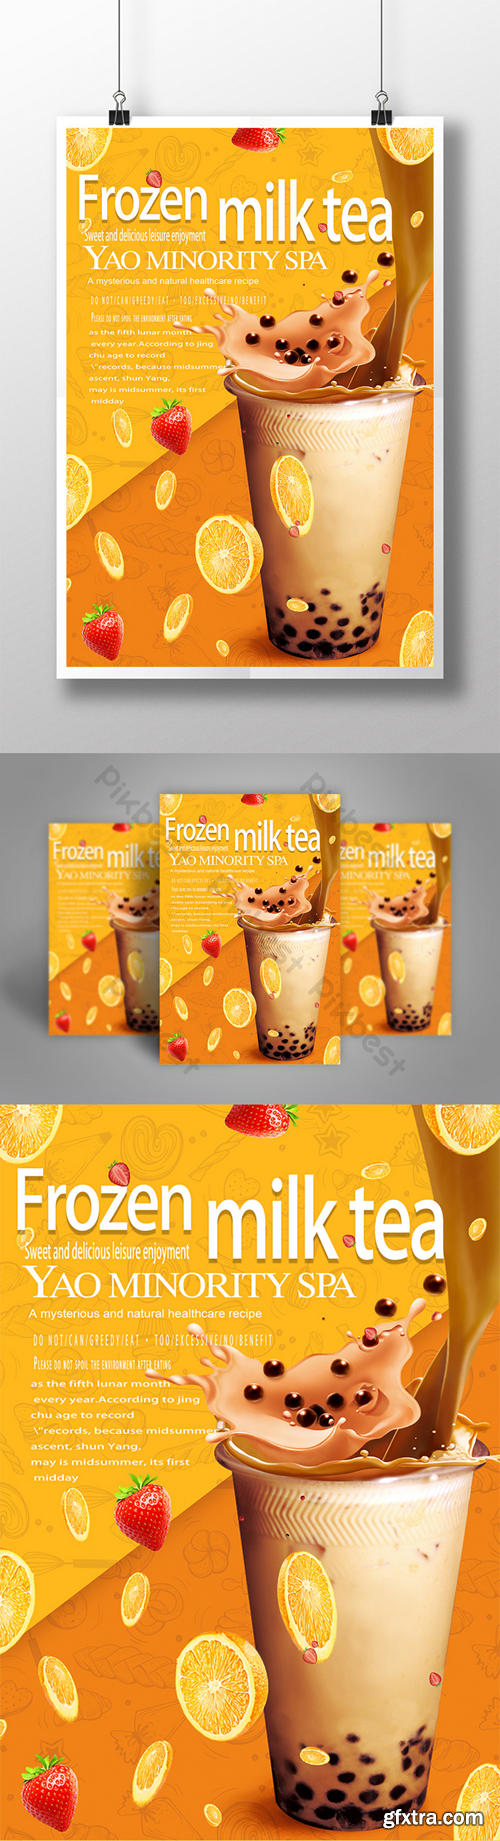 Summer Promotions Frozen Milk Tea Dessert Drink Poster Template PSD